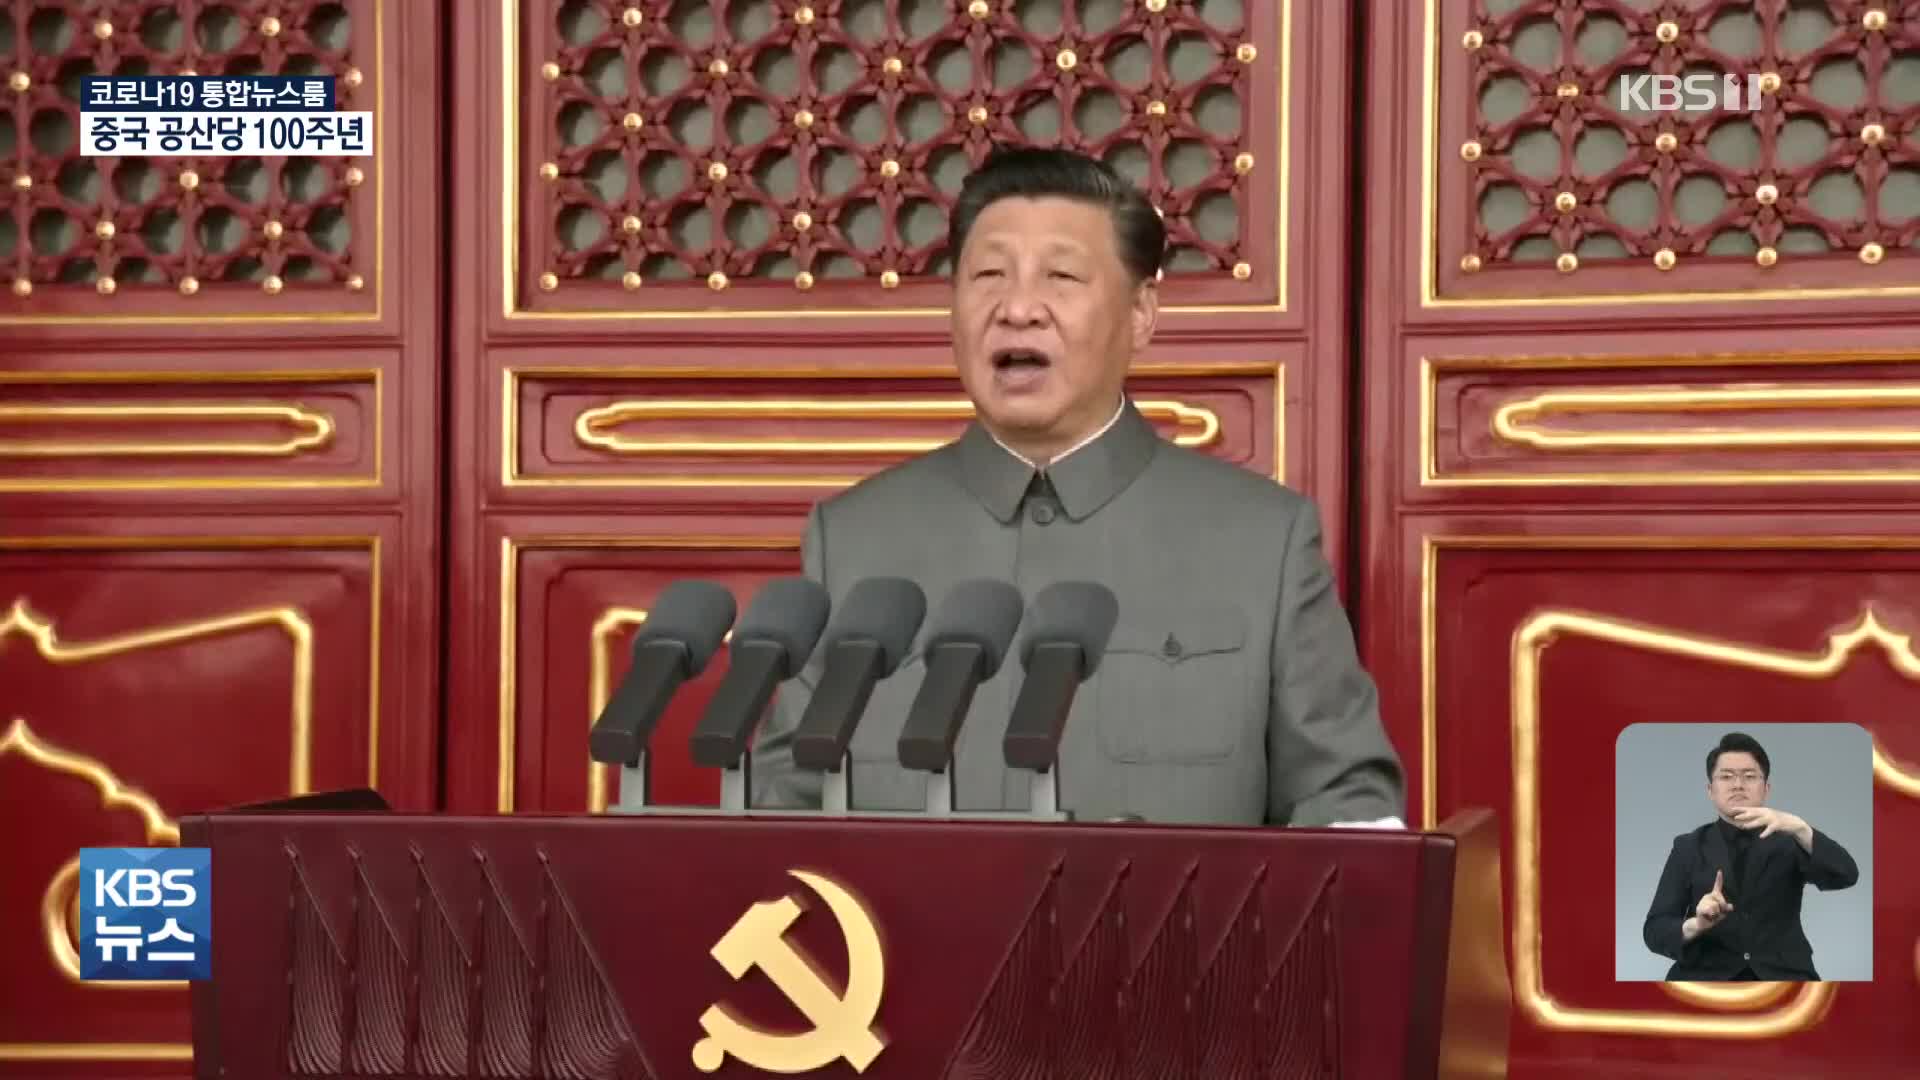 시진핑, 세계 중심 반드시 실현…“괴롭히면 용납 않을 것”